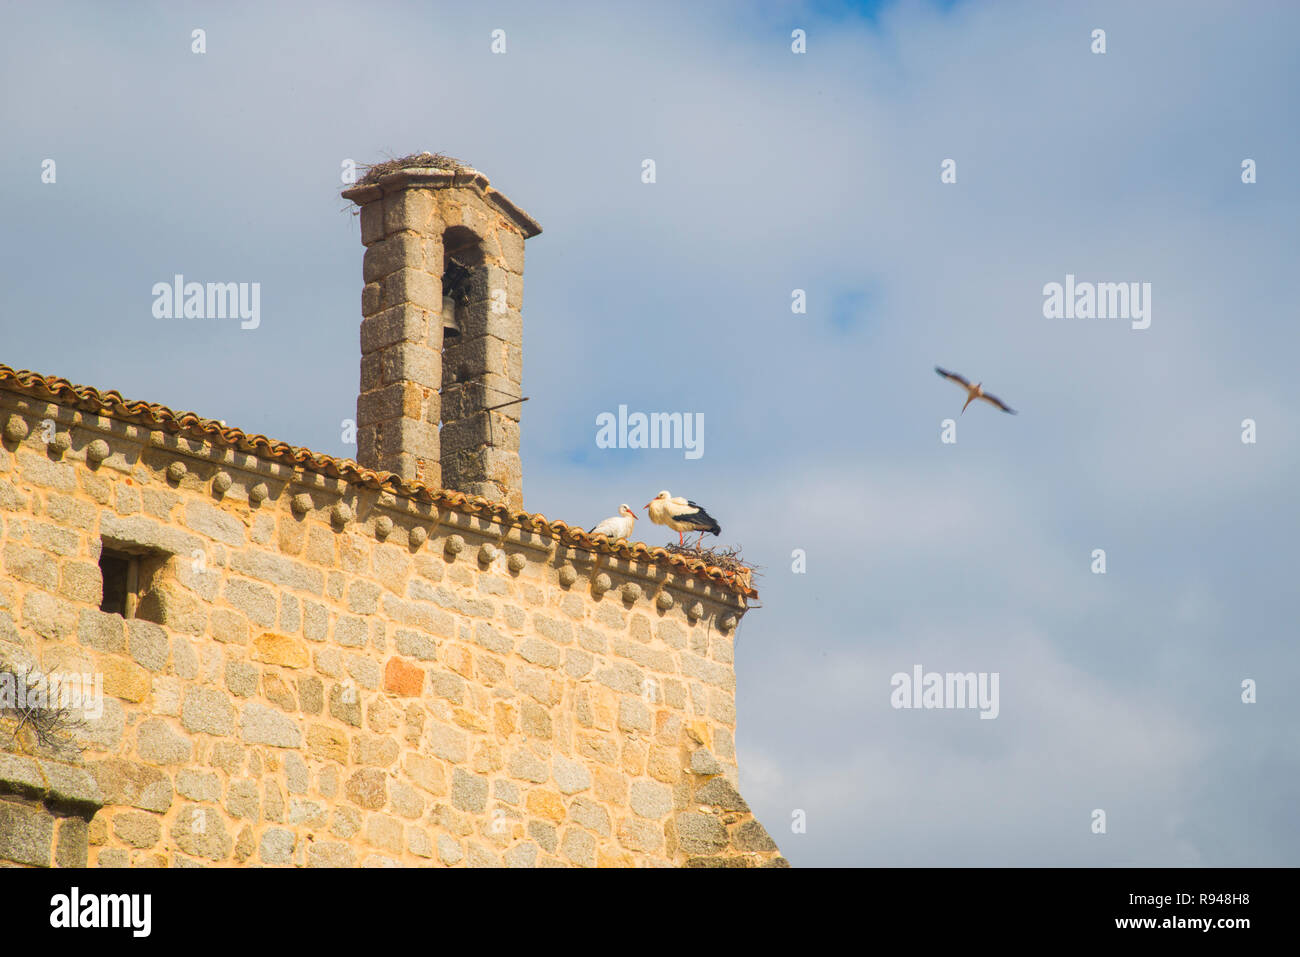 Les cigognes dans leur nid sur le toit de l'église. Colmenar Viejo, Espagne, province de Madrid. Banque D'Images